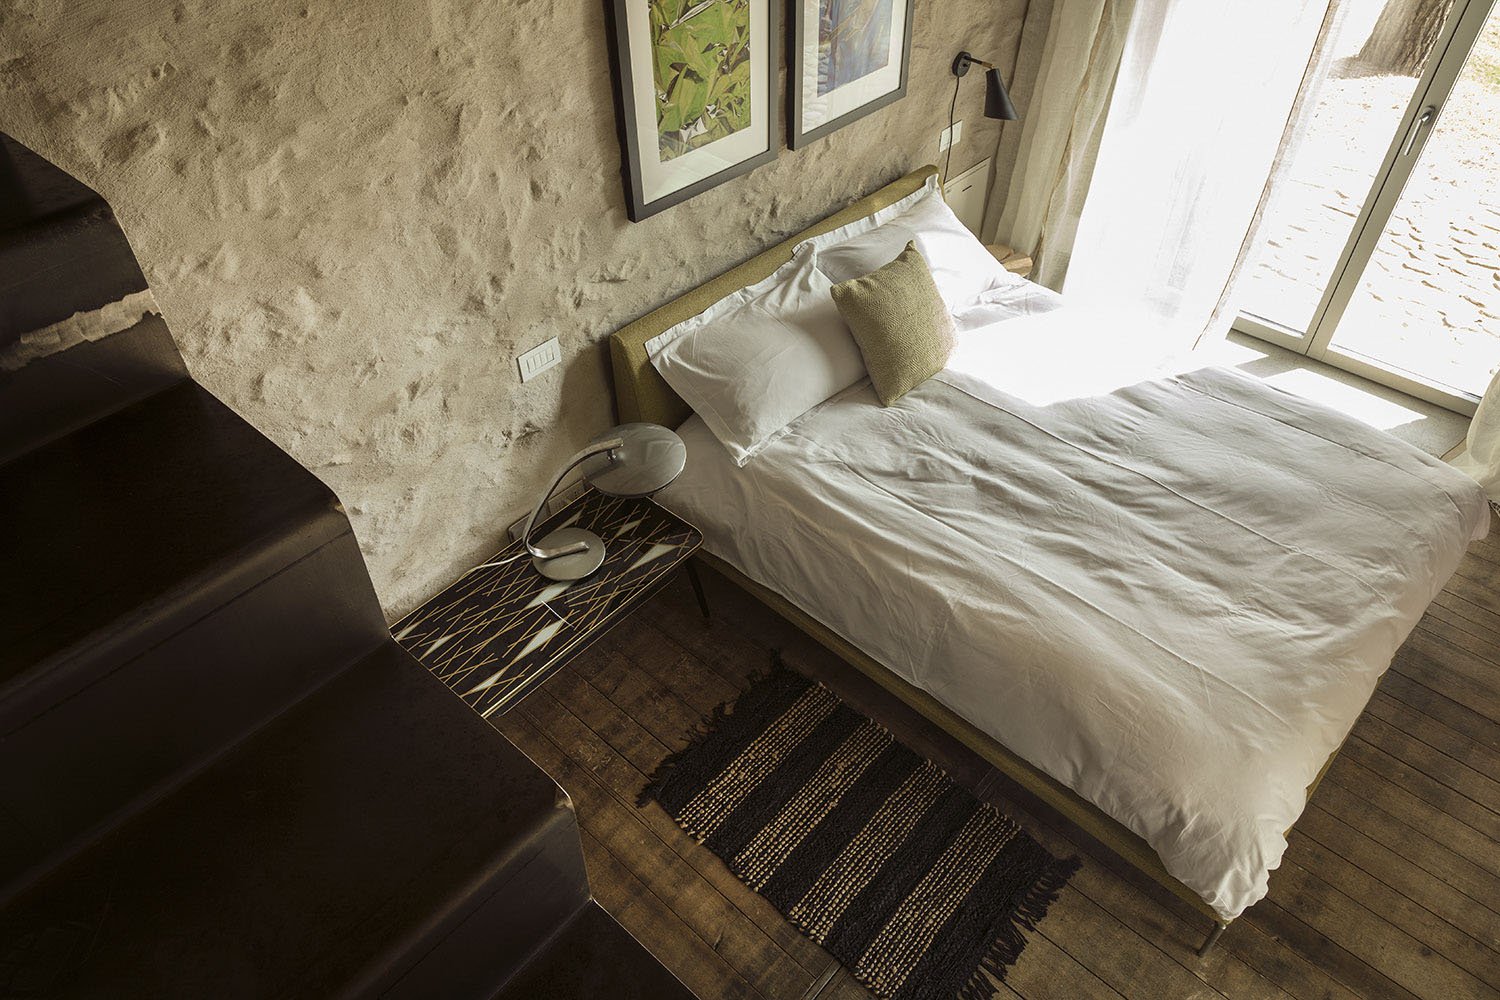 Dependance guest bedroom | Mattia Aquila